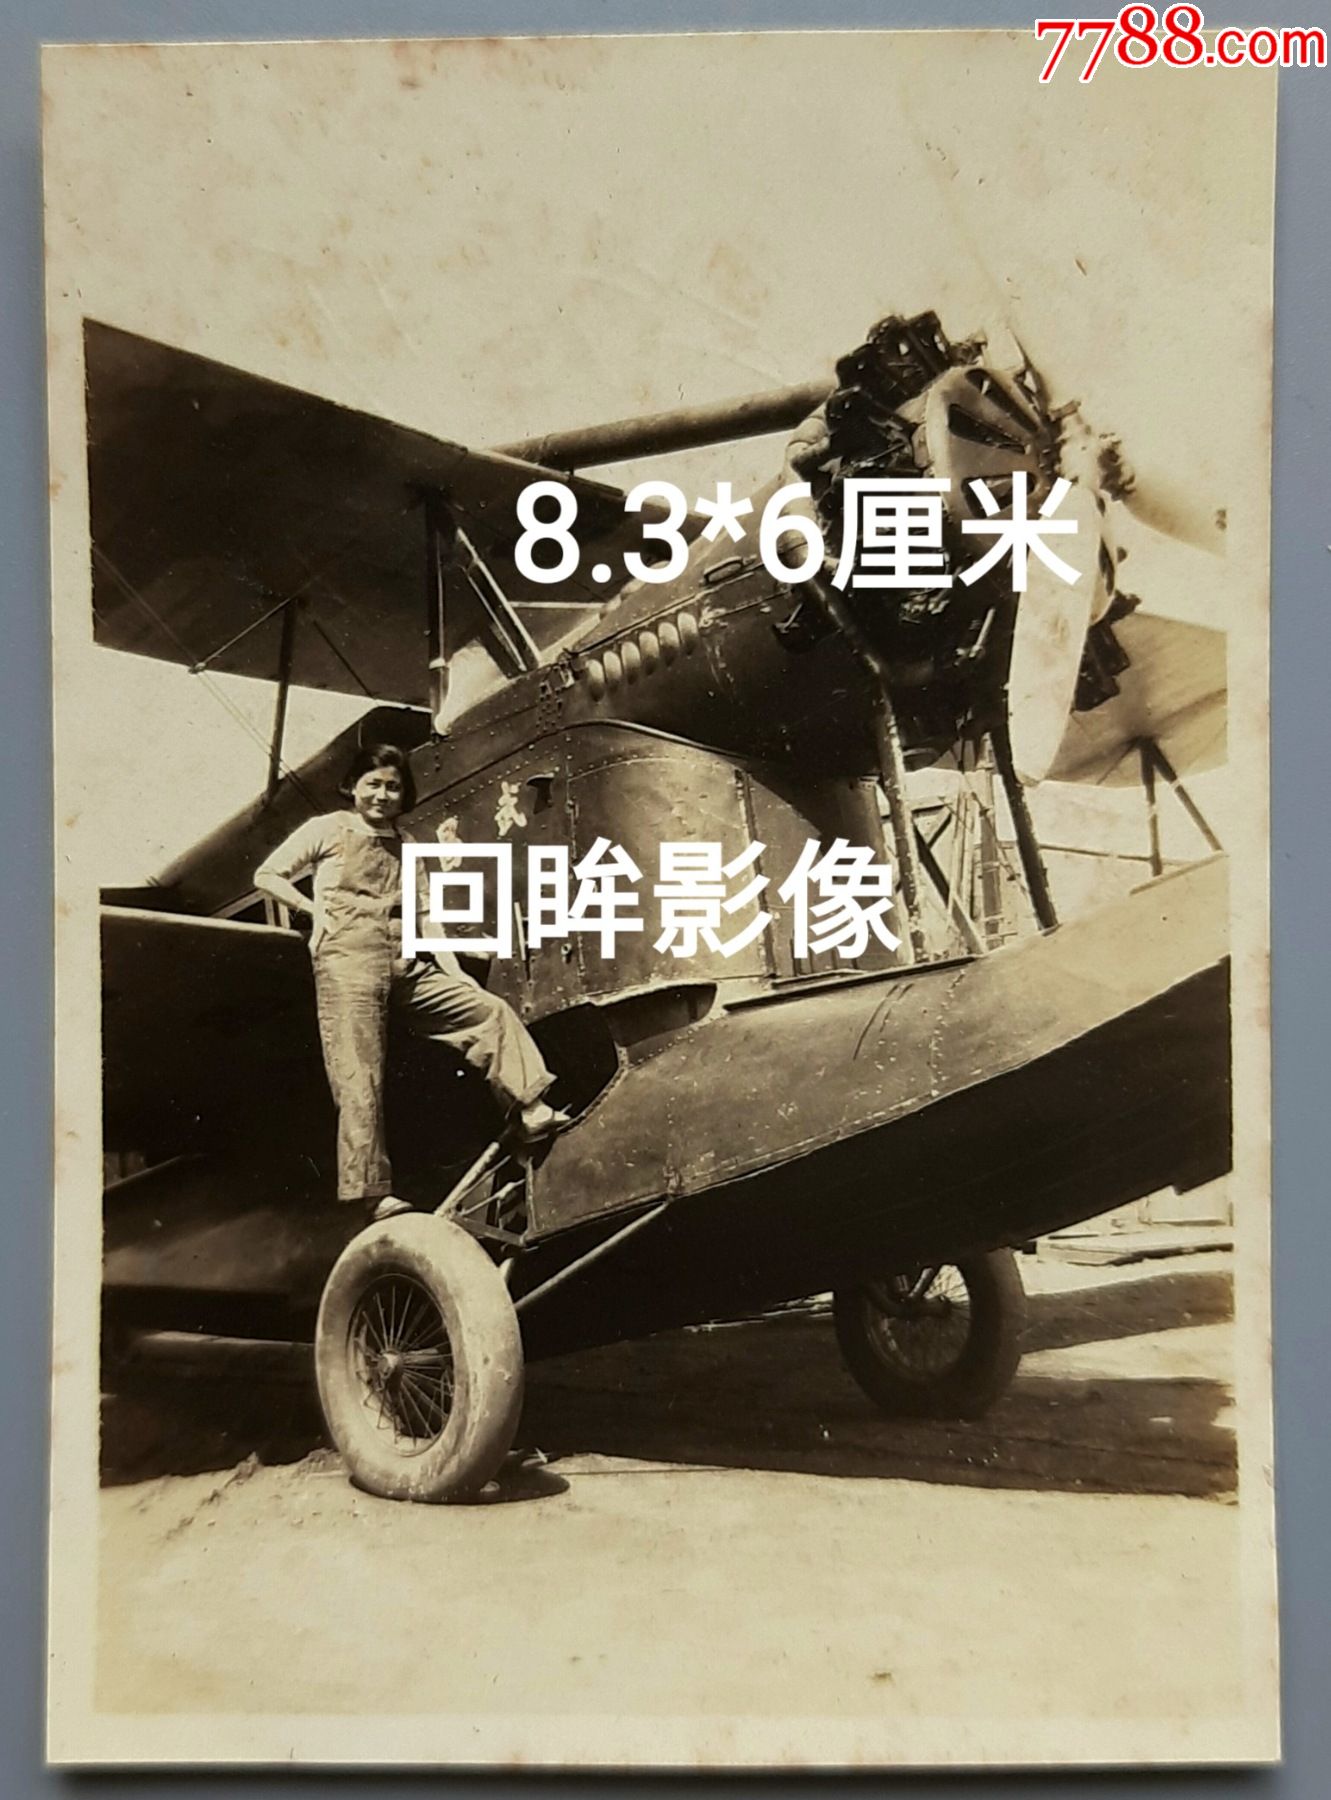 杨系列1:1933年武昌号水陆两用邮政飞机在龙华机场_老照片_回眸影像